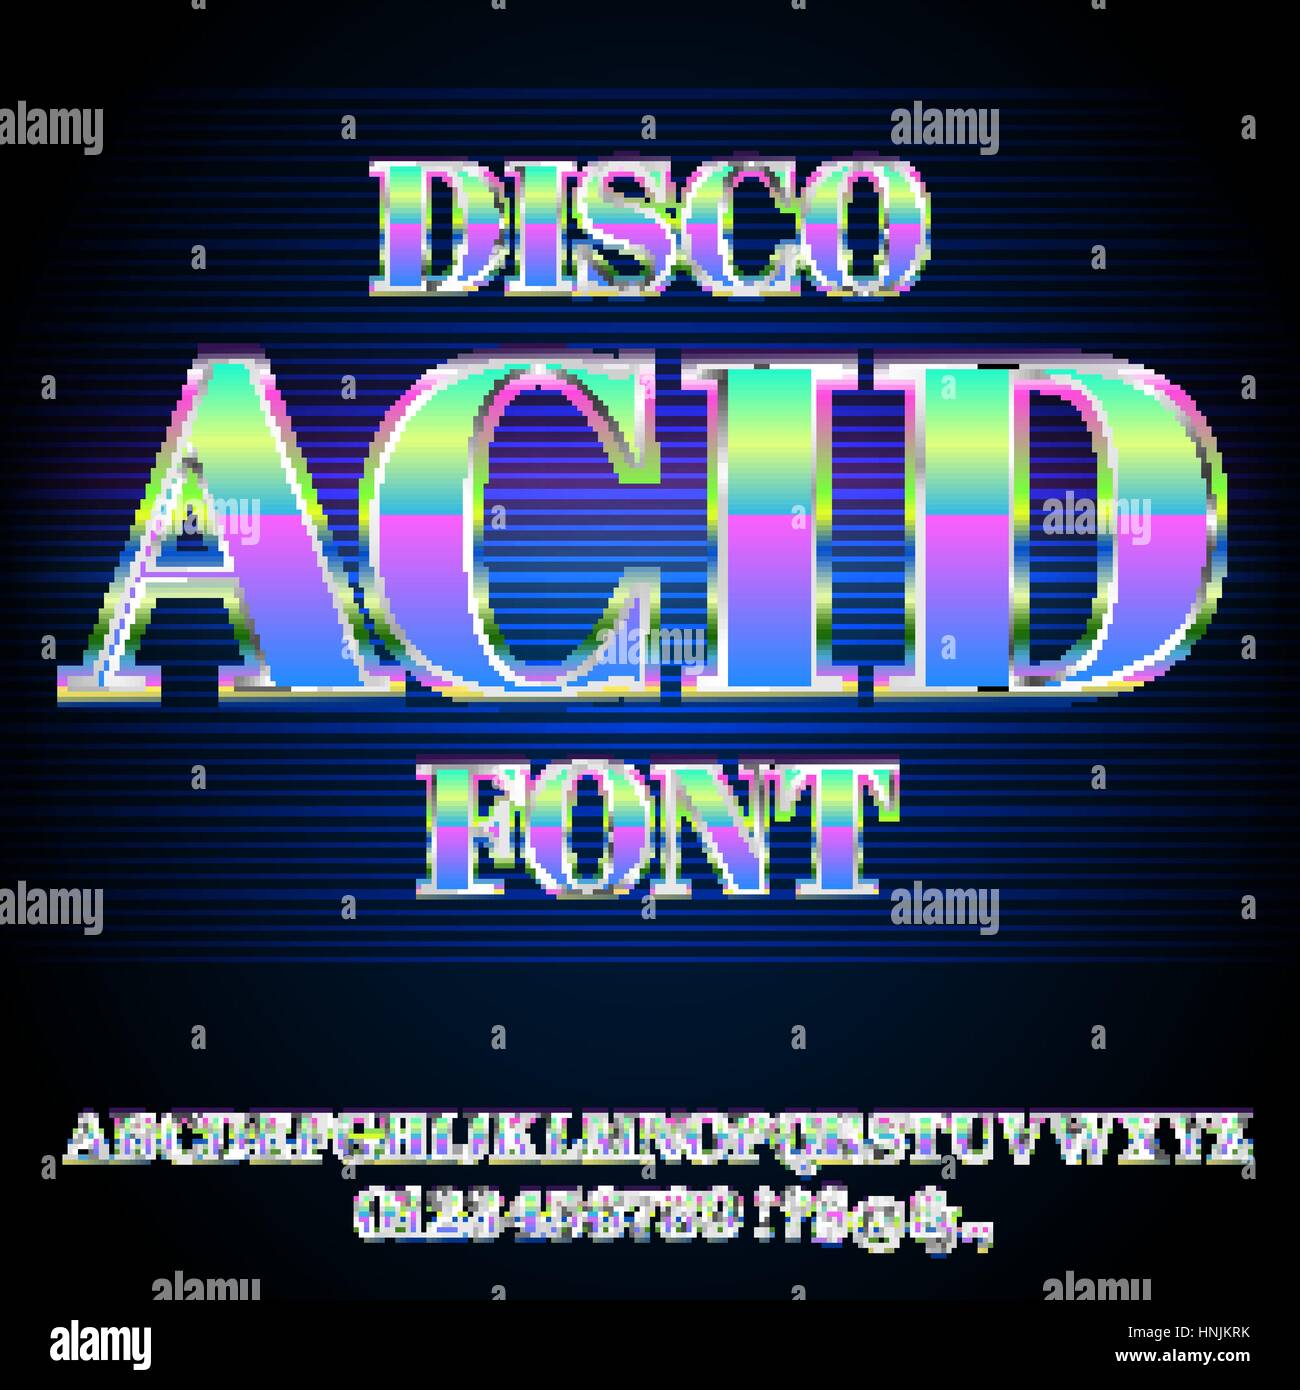 Acid House Font Illustrazione Vettoriale